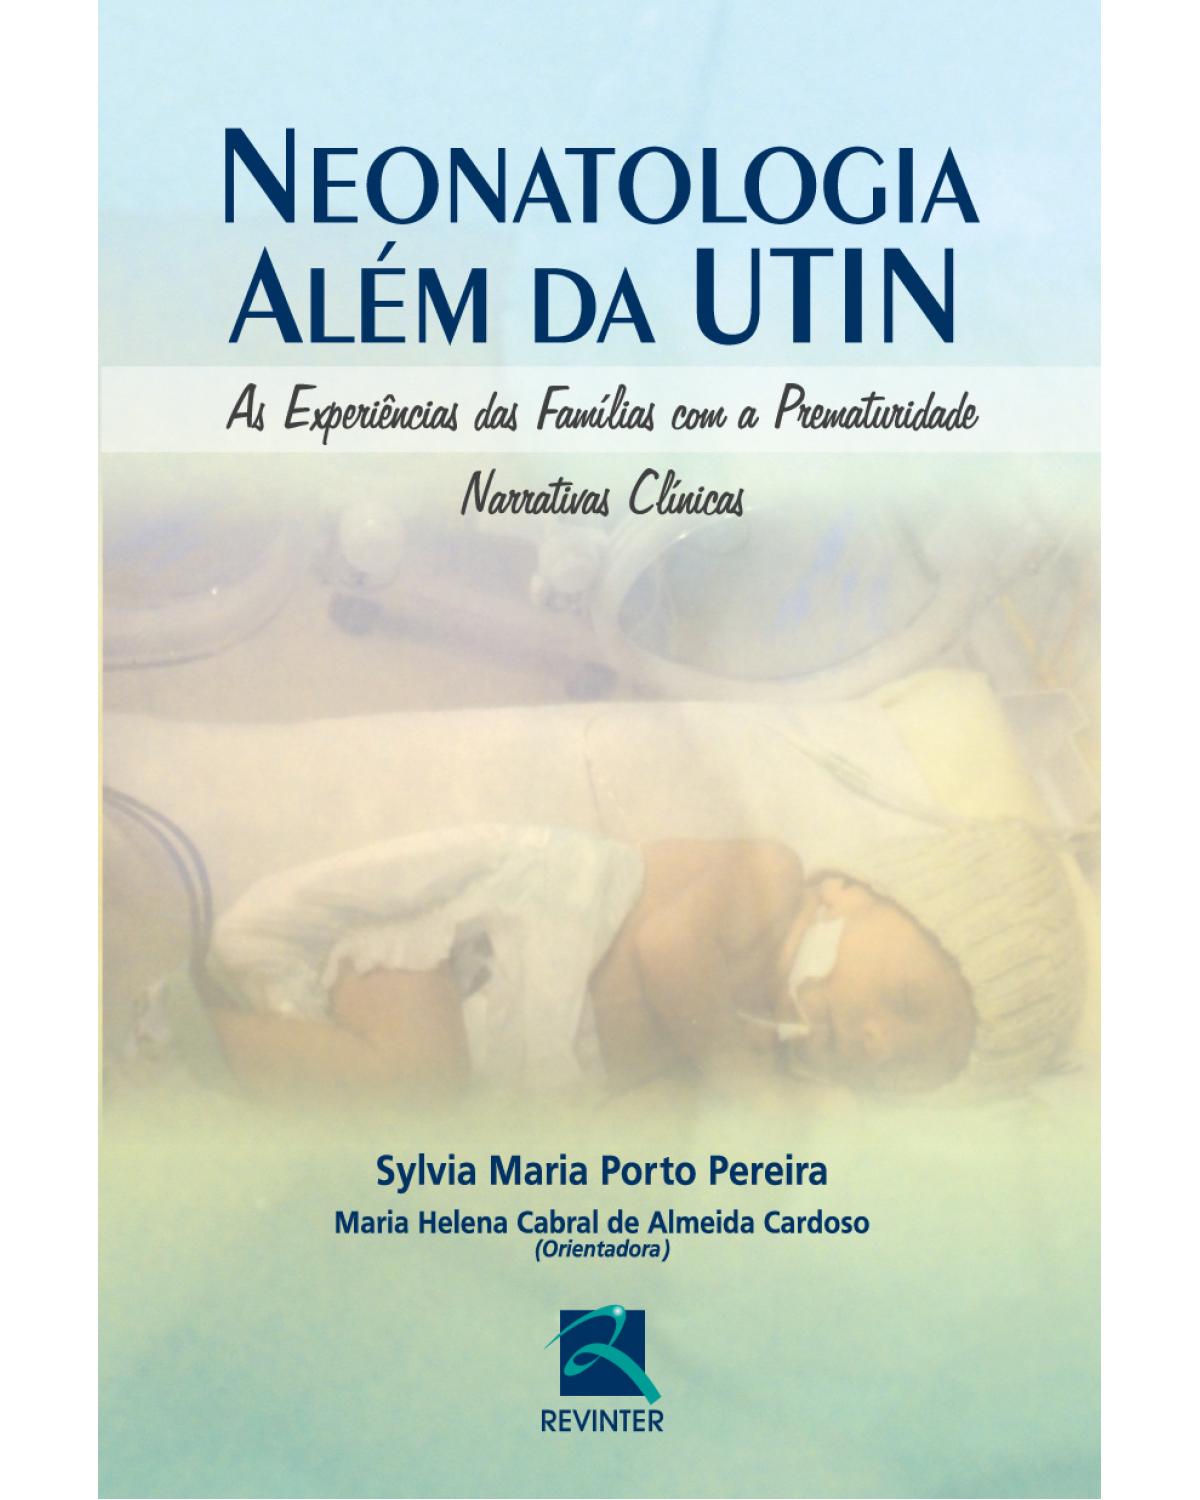 Neonatologia além da UTIN - as experiências das famílias com a prematuridade - Narrativas clínicas - 1ª Edição | 2013